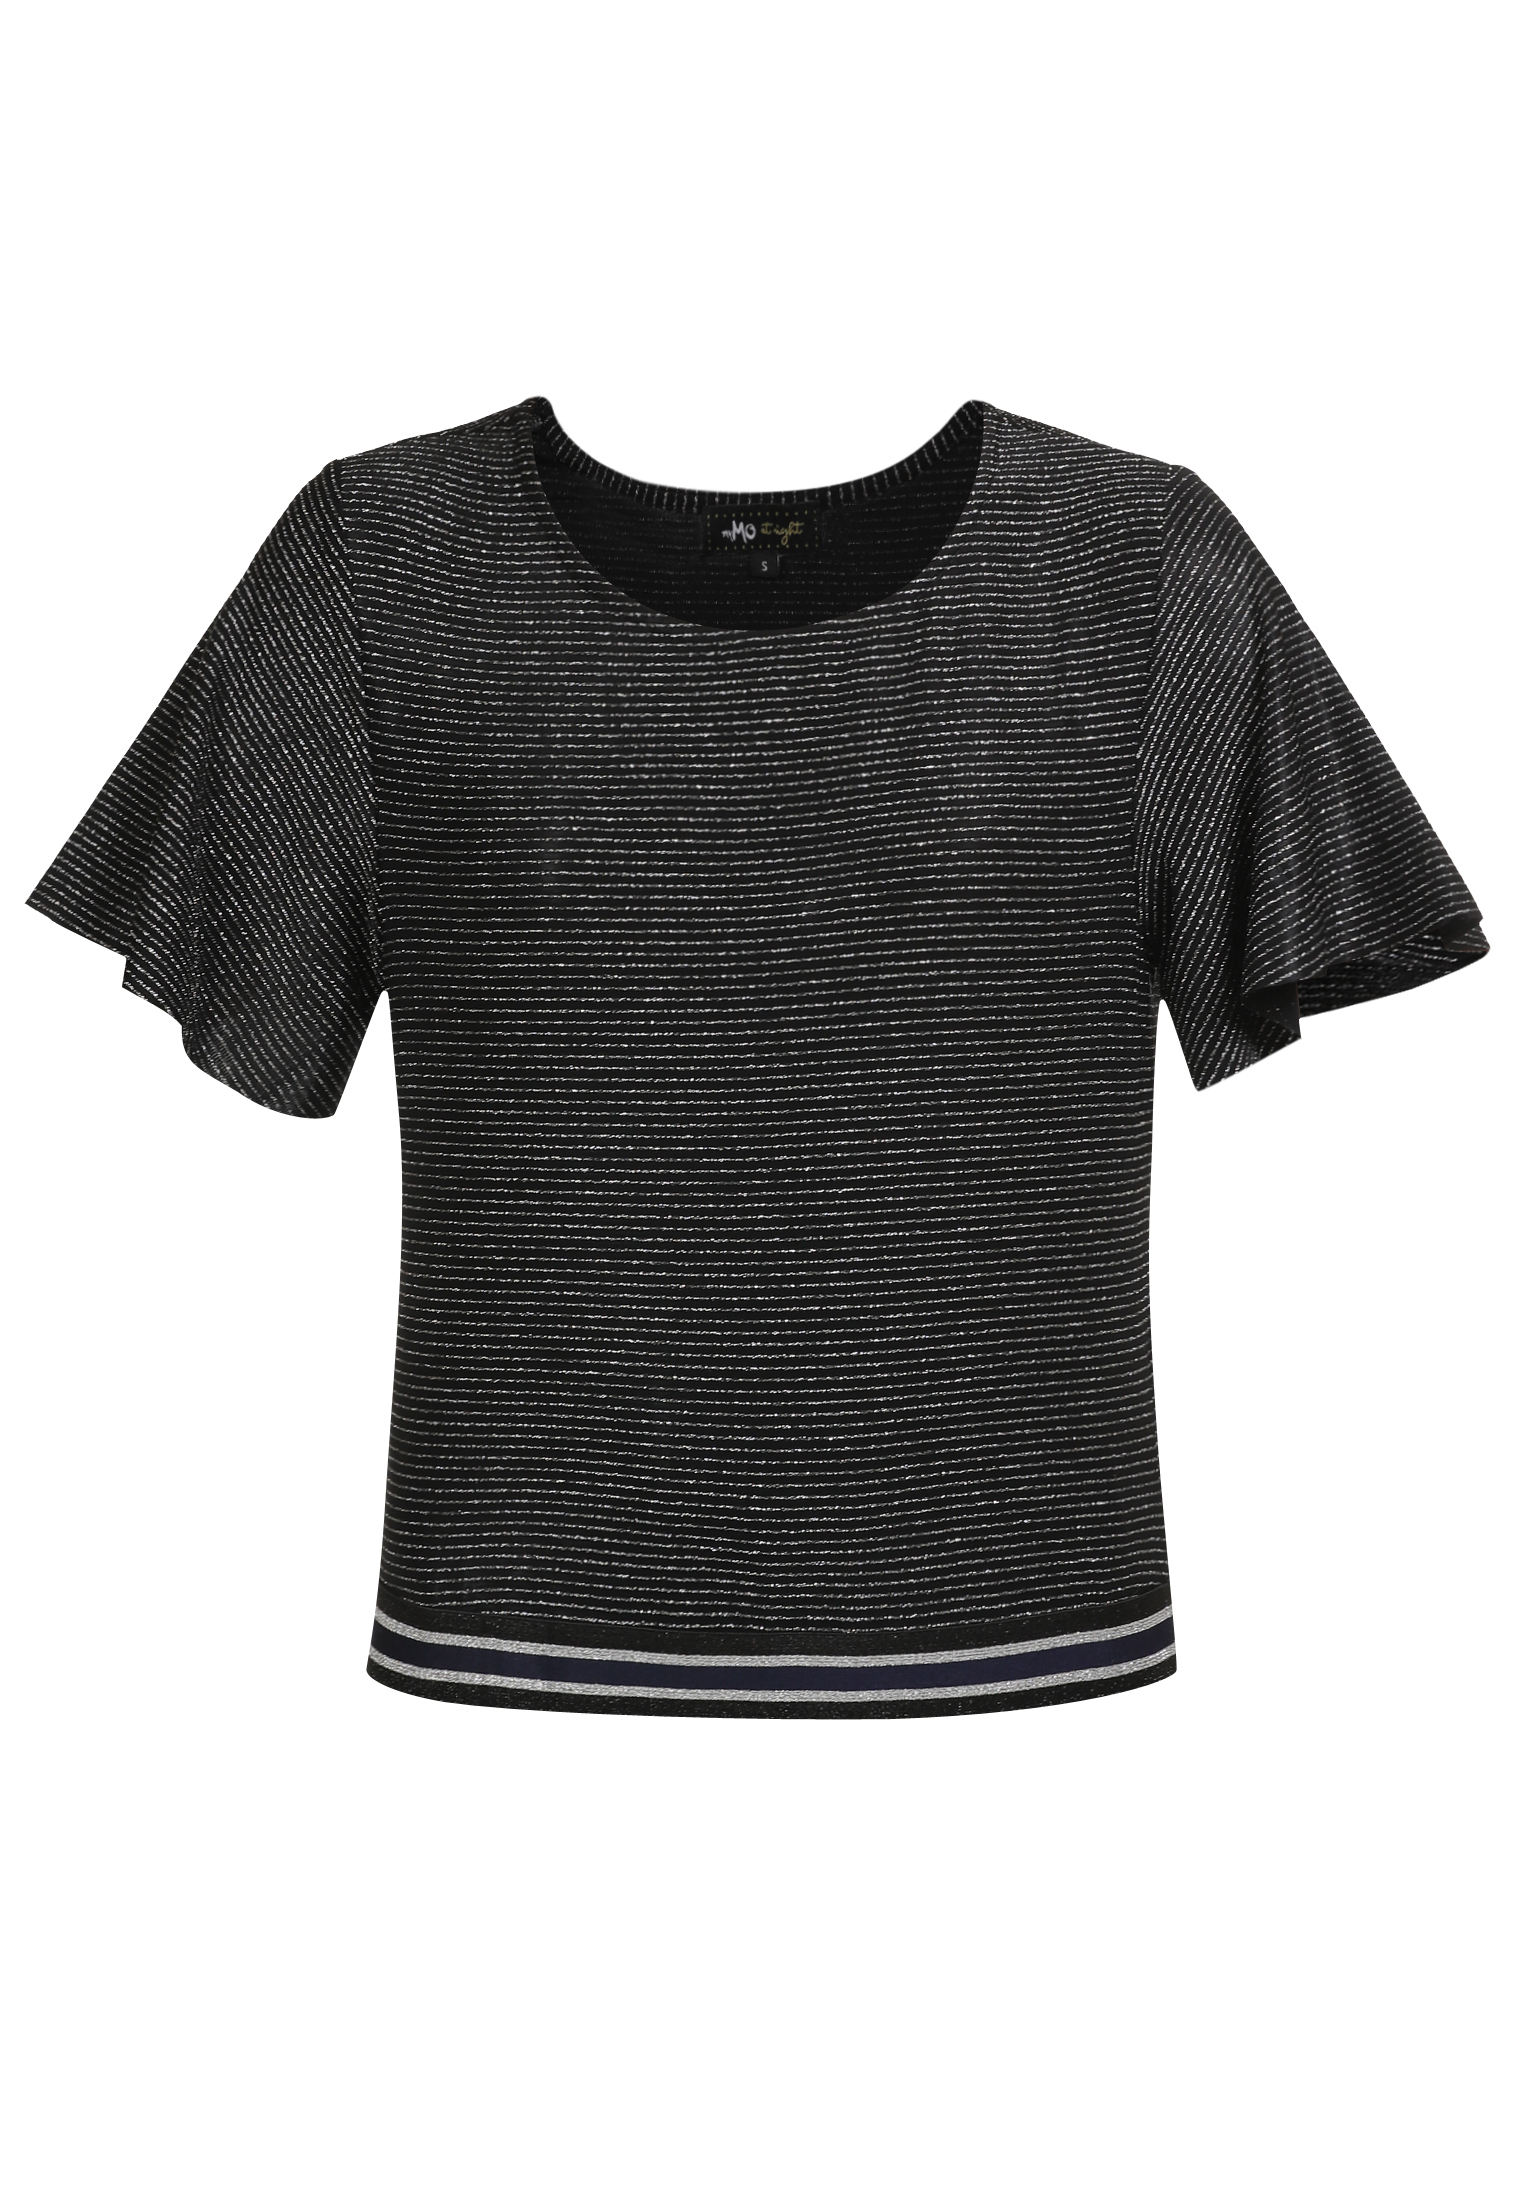 Odzież Koszulki & topy myMo at night T-Shirt w kolorze Czarnym 